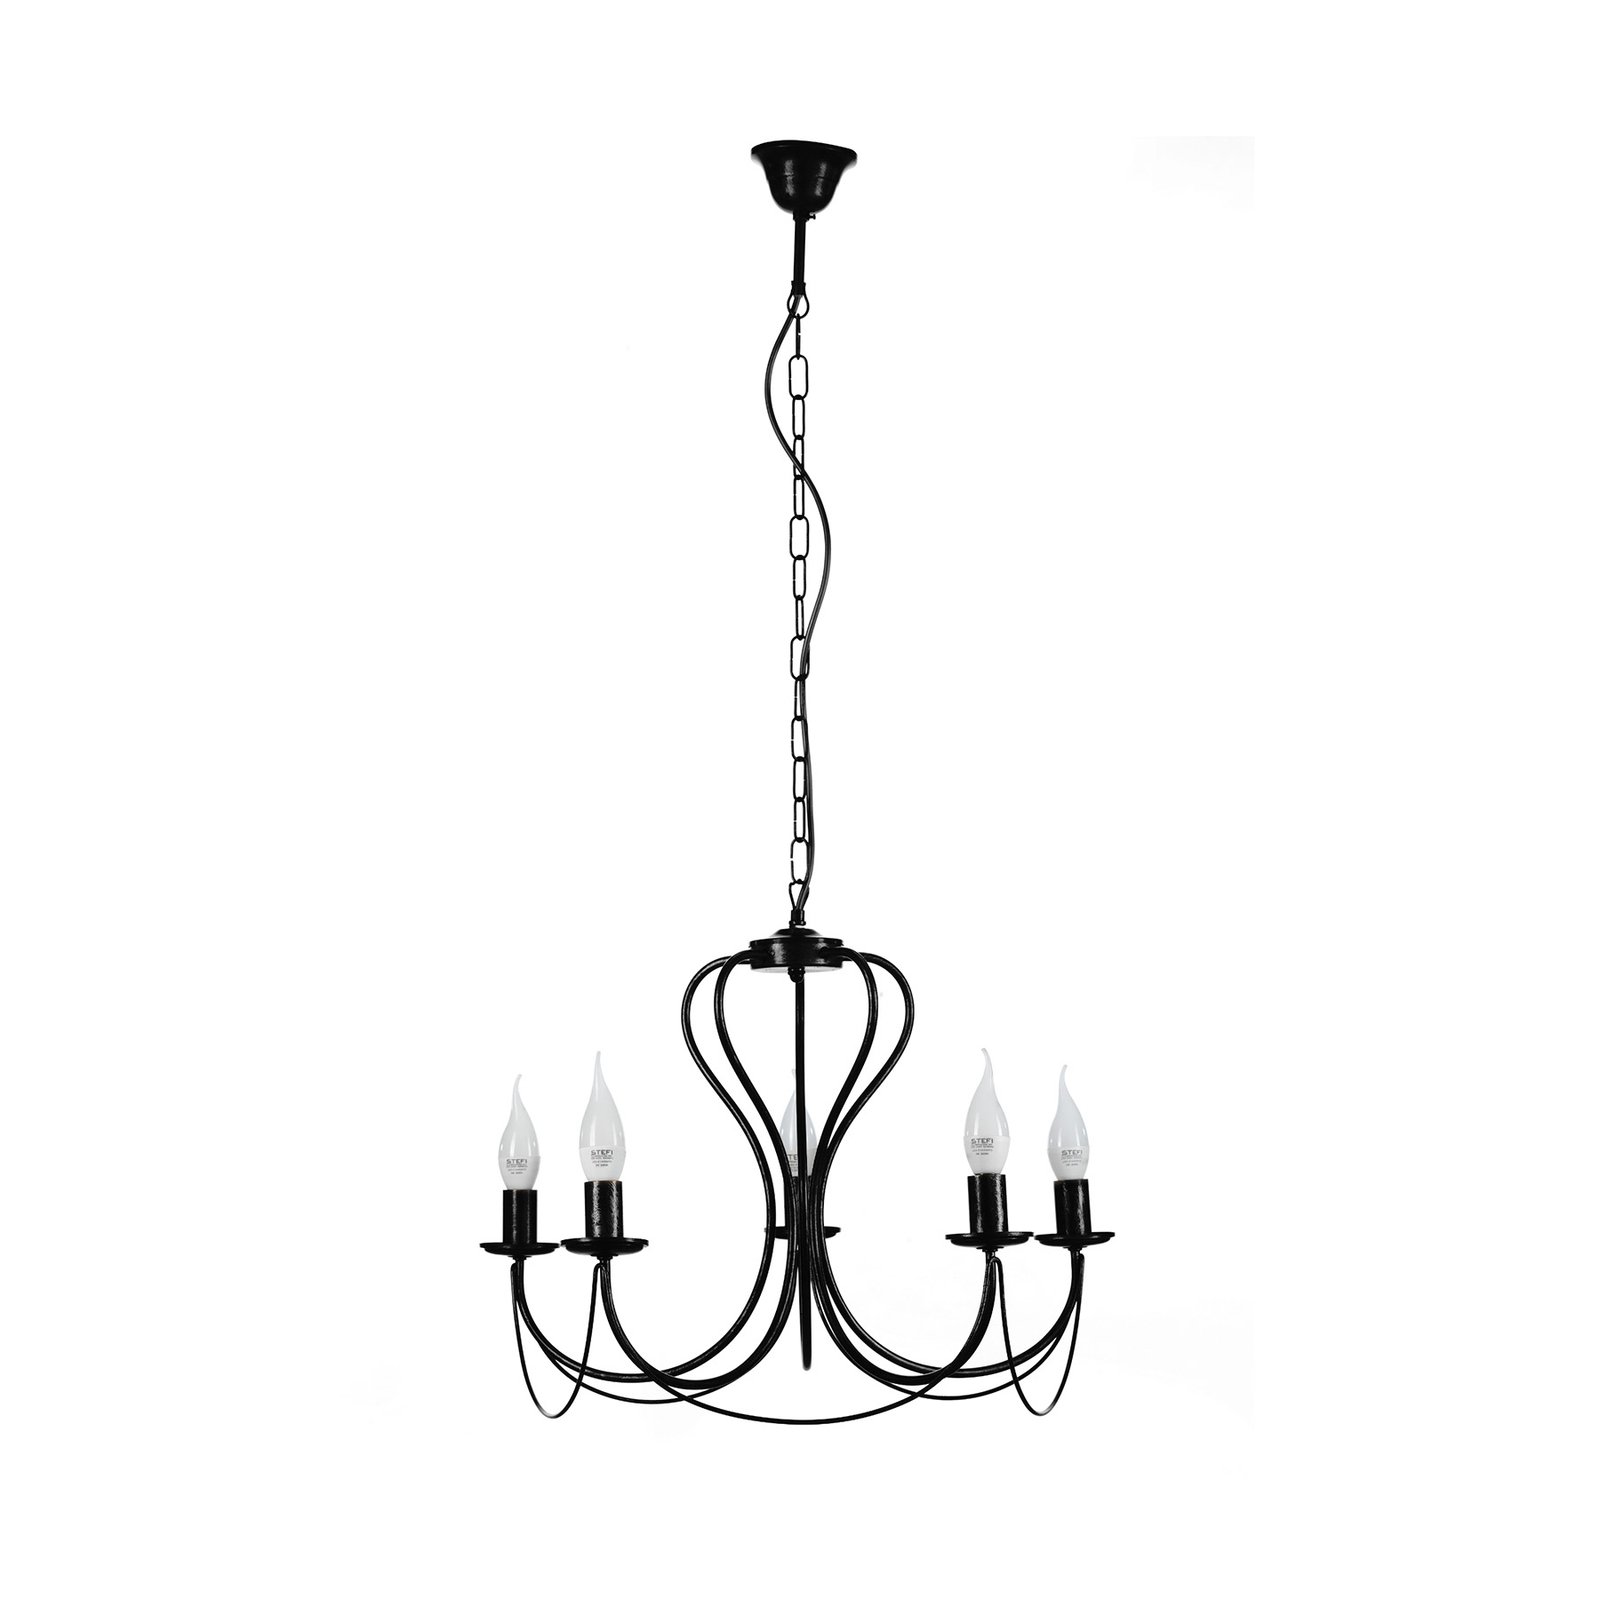 Candela chandelier, black, 5-bulb